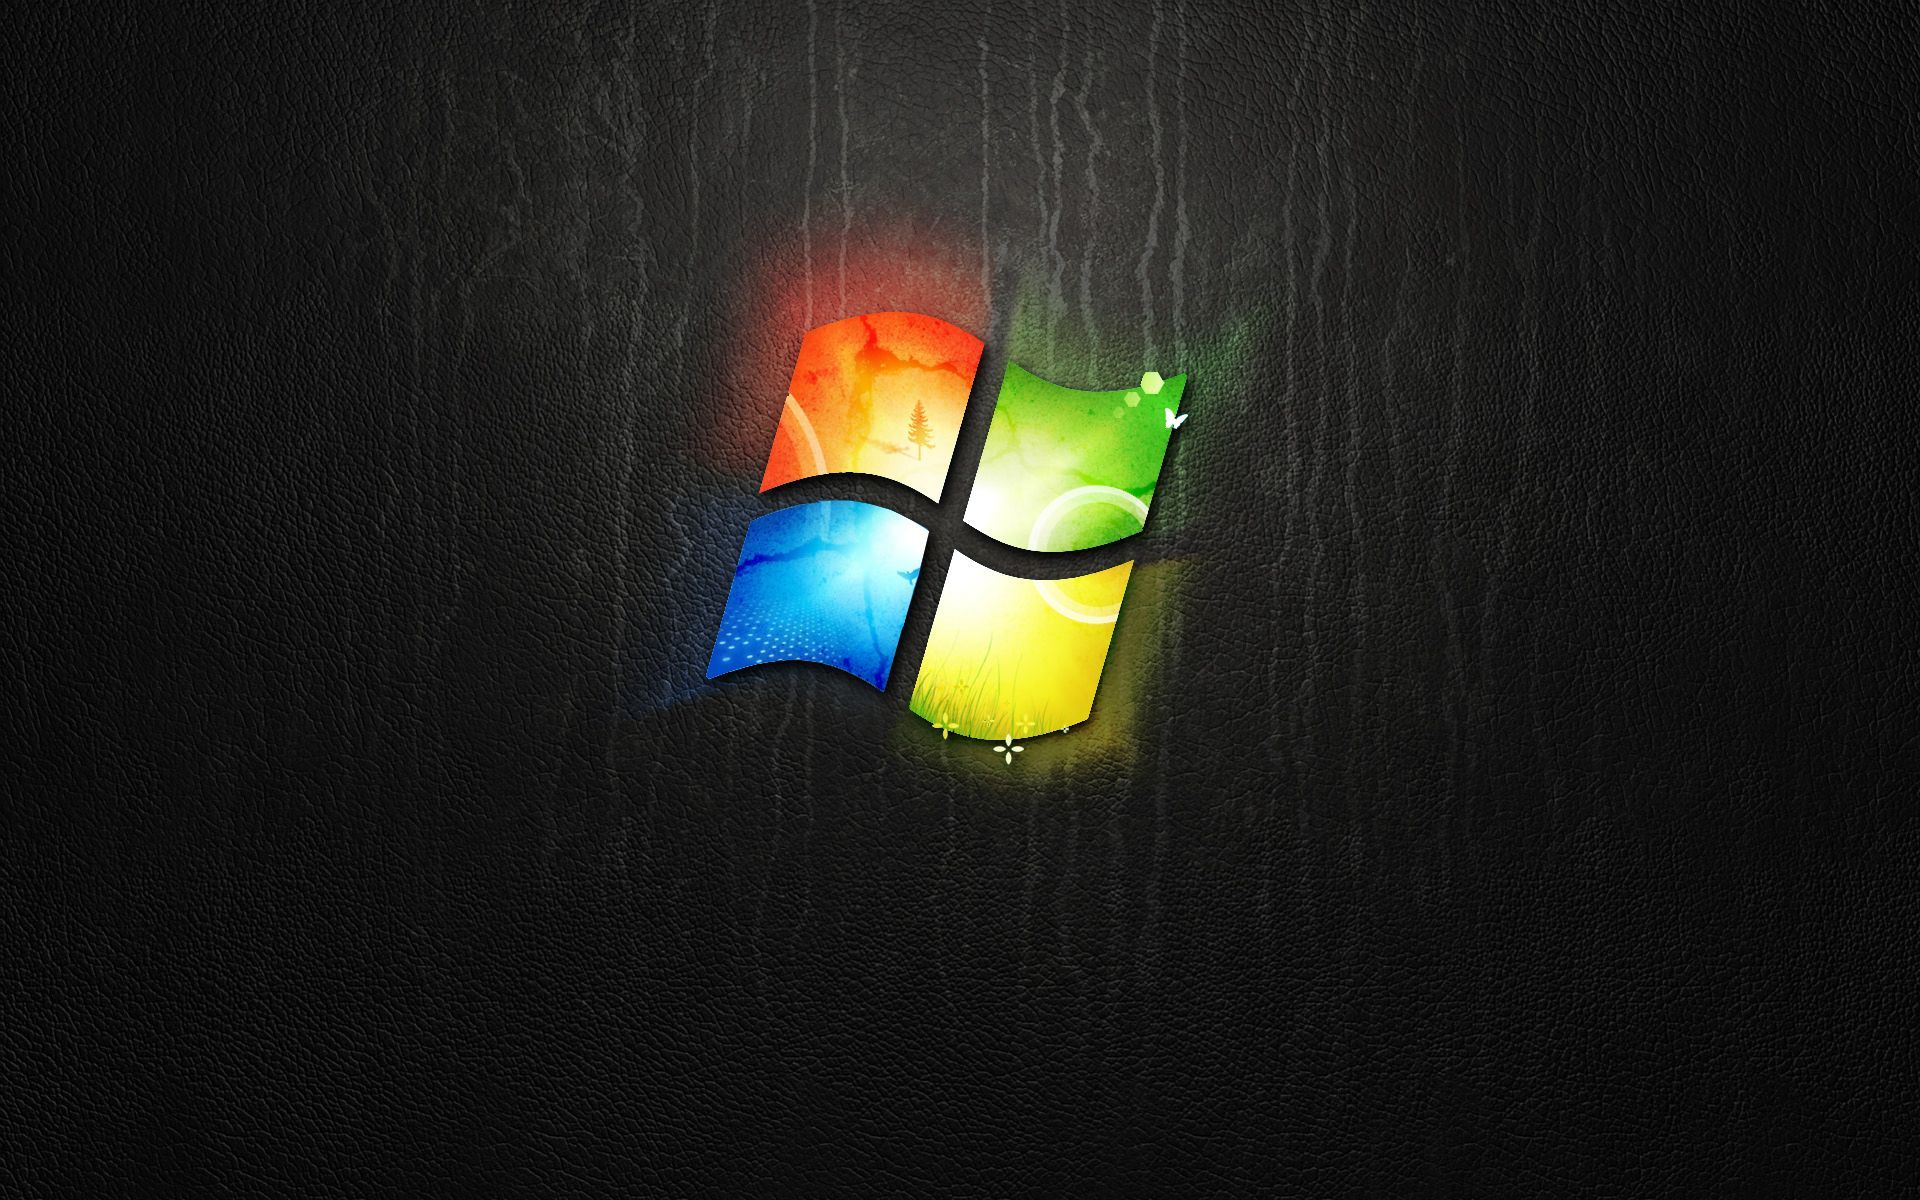 Dark Windows 7 Wallpaper by giannisgx89 on DeviantArt